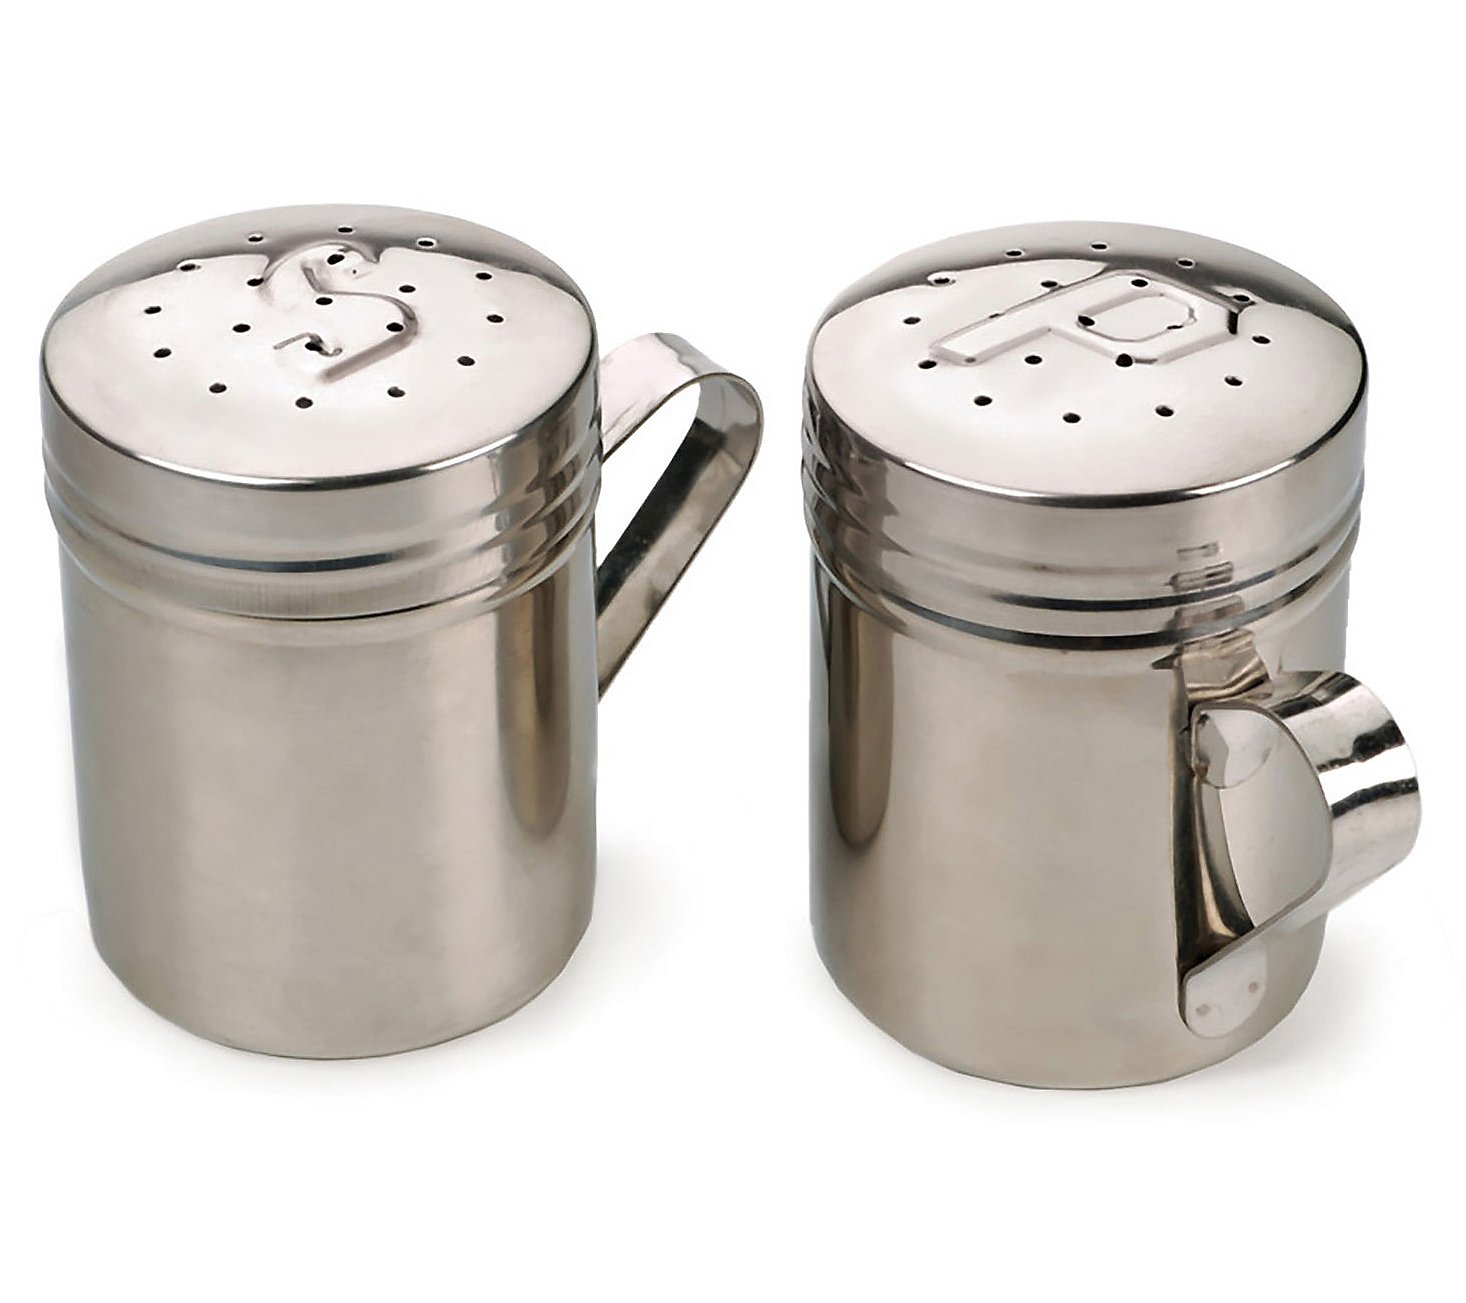 RSVP Stovetop Salt and Pepper Shaker Set